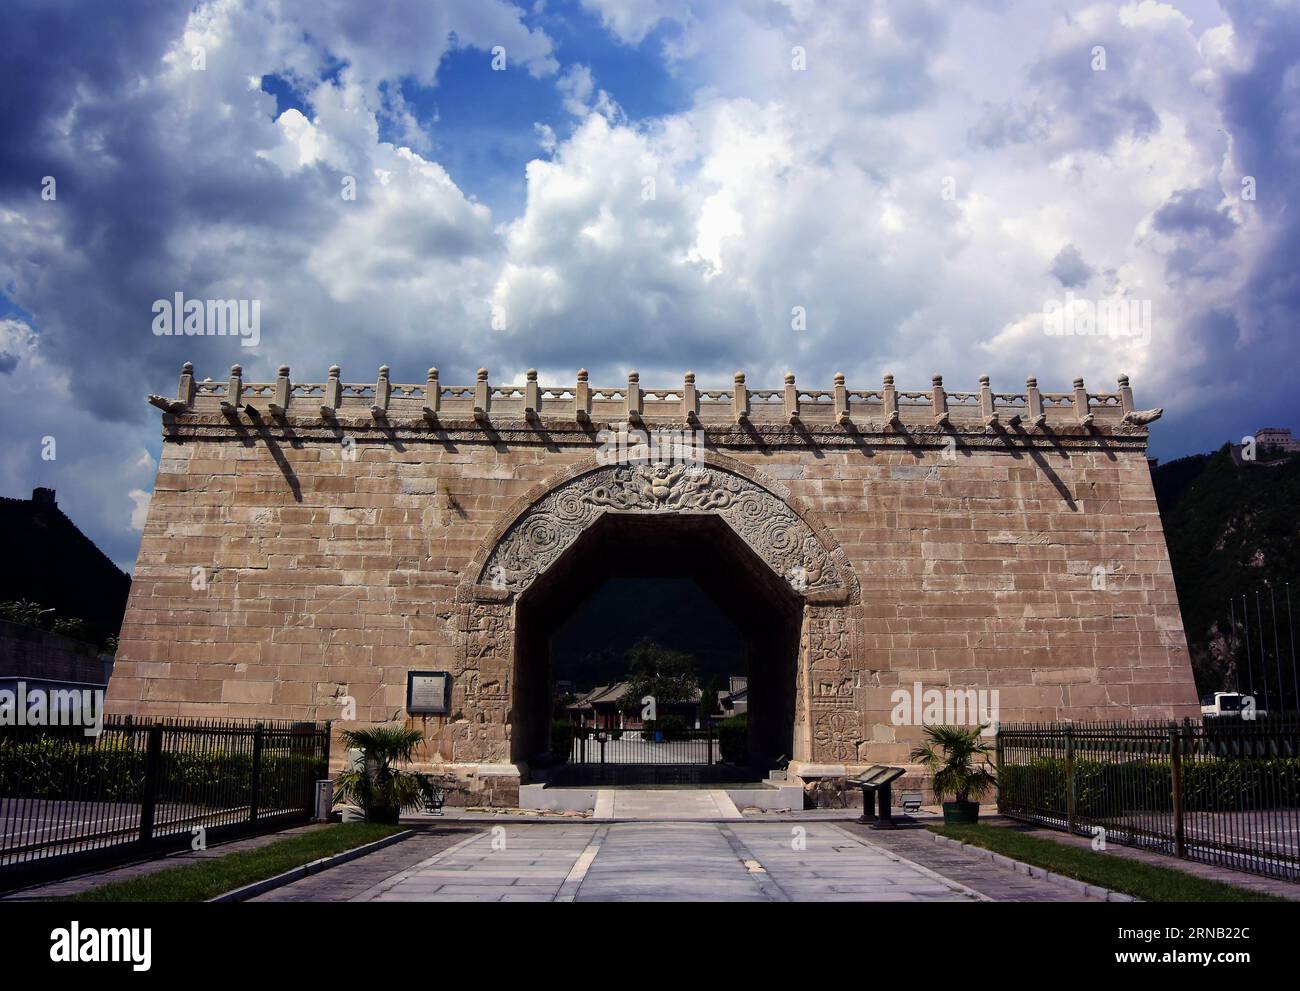 (160215) -- PÉKIN, 15 février 2016 -- une photo prise le 28 août 2015 montre Yuntai dans le col de Juyongguan, district de Changping, Pékin, capitale de la Chine. Yuntai, construit en l'an 1345, était la plate-forme en arc-typé d'une pagode au-dessus d'une voie à l'intérieur du col Juyongguan.) (Ry) CHINE-ANCIENNES PAGODES (CN) WangxSong PUBLICATIONxNOTxINxCHN Beijing février 15 2016 photo prise LE 28 2015 août montre Yuntai à Juyongguan Passeport Chang Ping Beijing capitale de la Chine Yuntai construit en l'an de 1345 ce que l'arche typée plate-forme d'une pagode sur une ruelle à l'intérieur Juyongguan Passeport Ry Chine anciennes pagodes CN Wang Banque D'Images